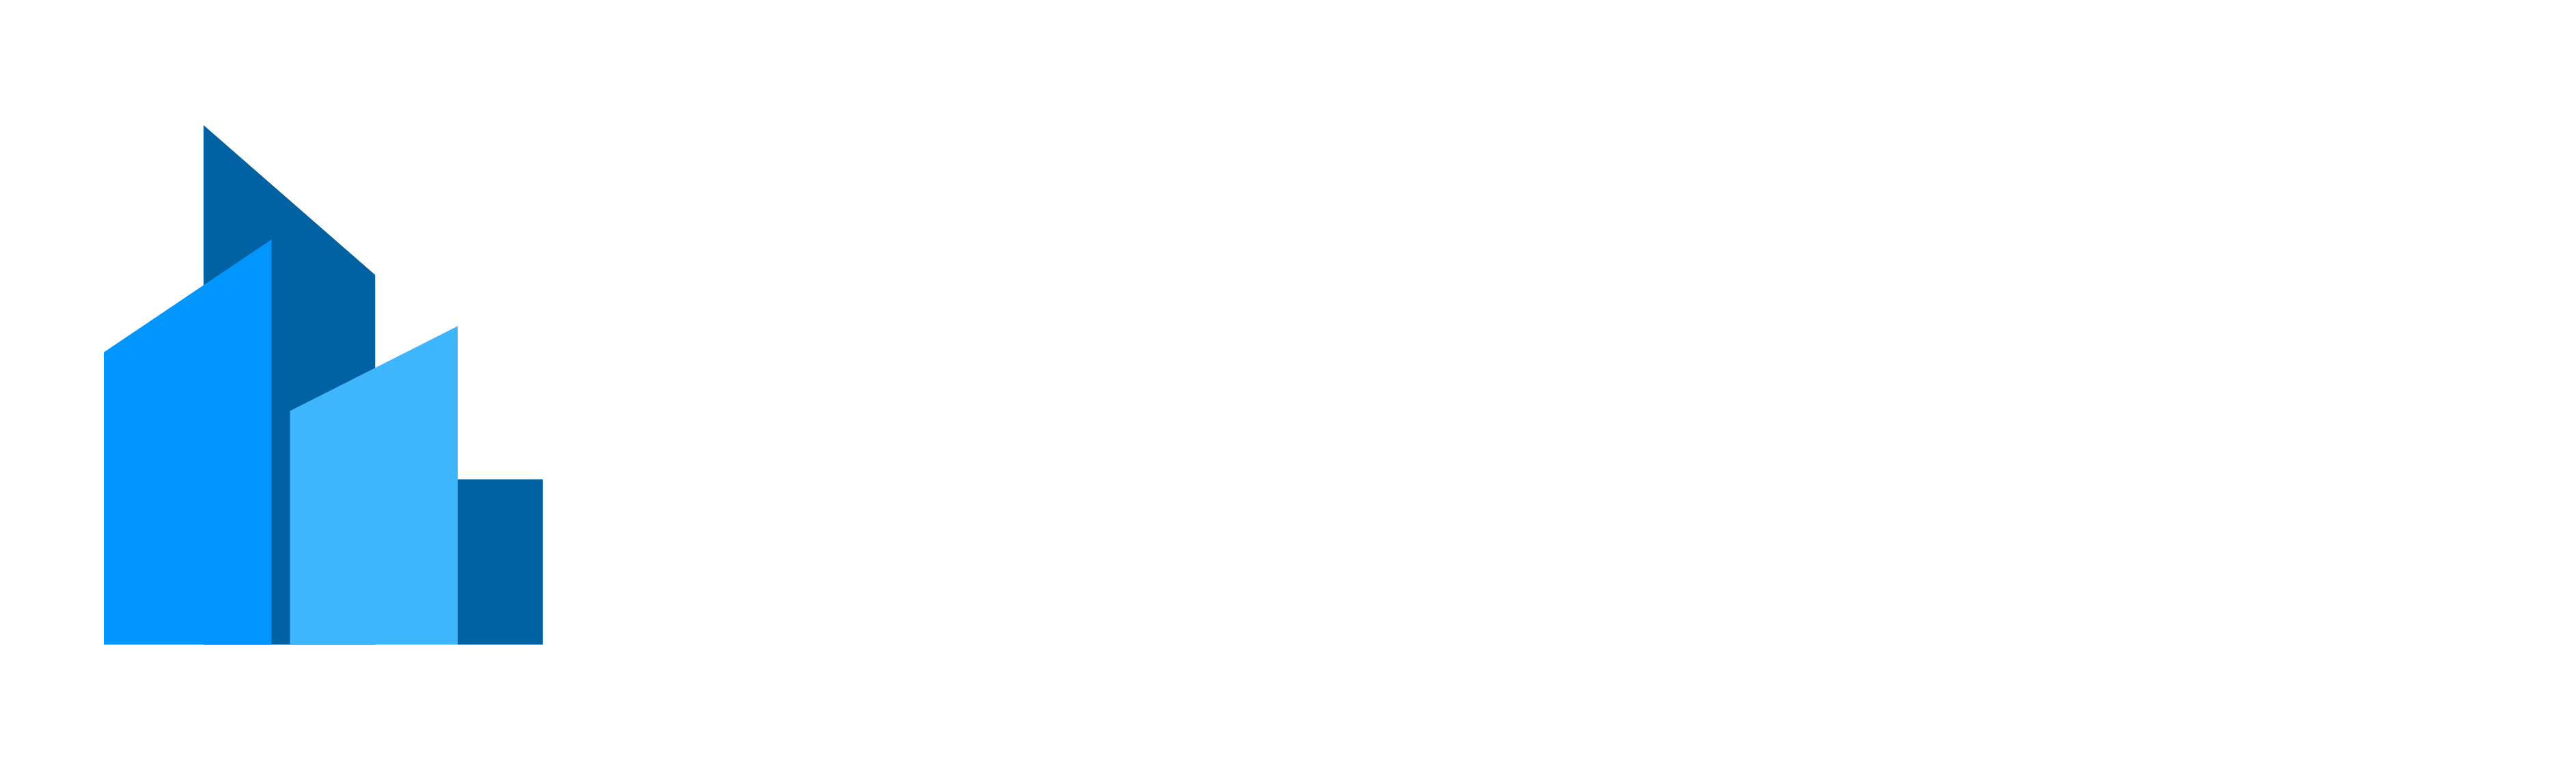 Narvikgården 